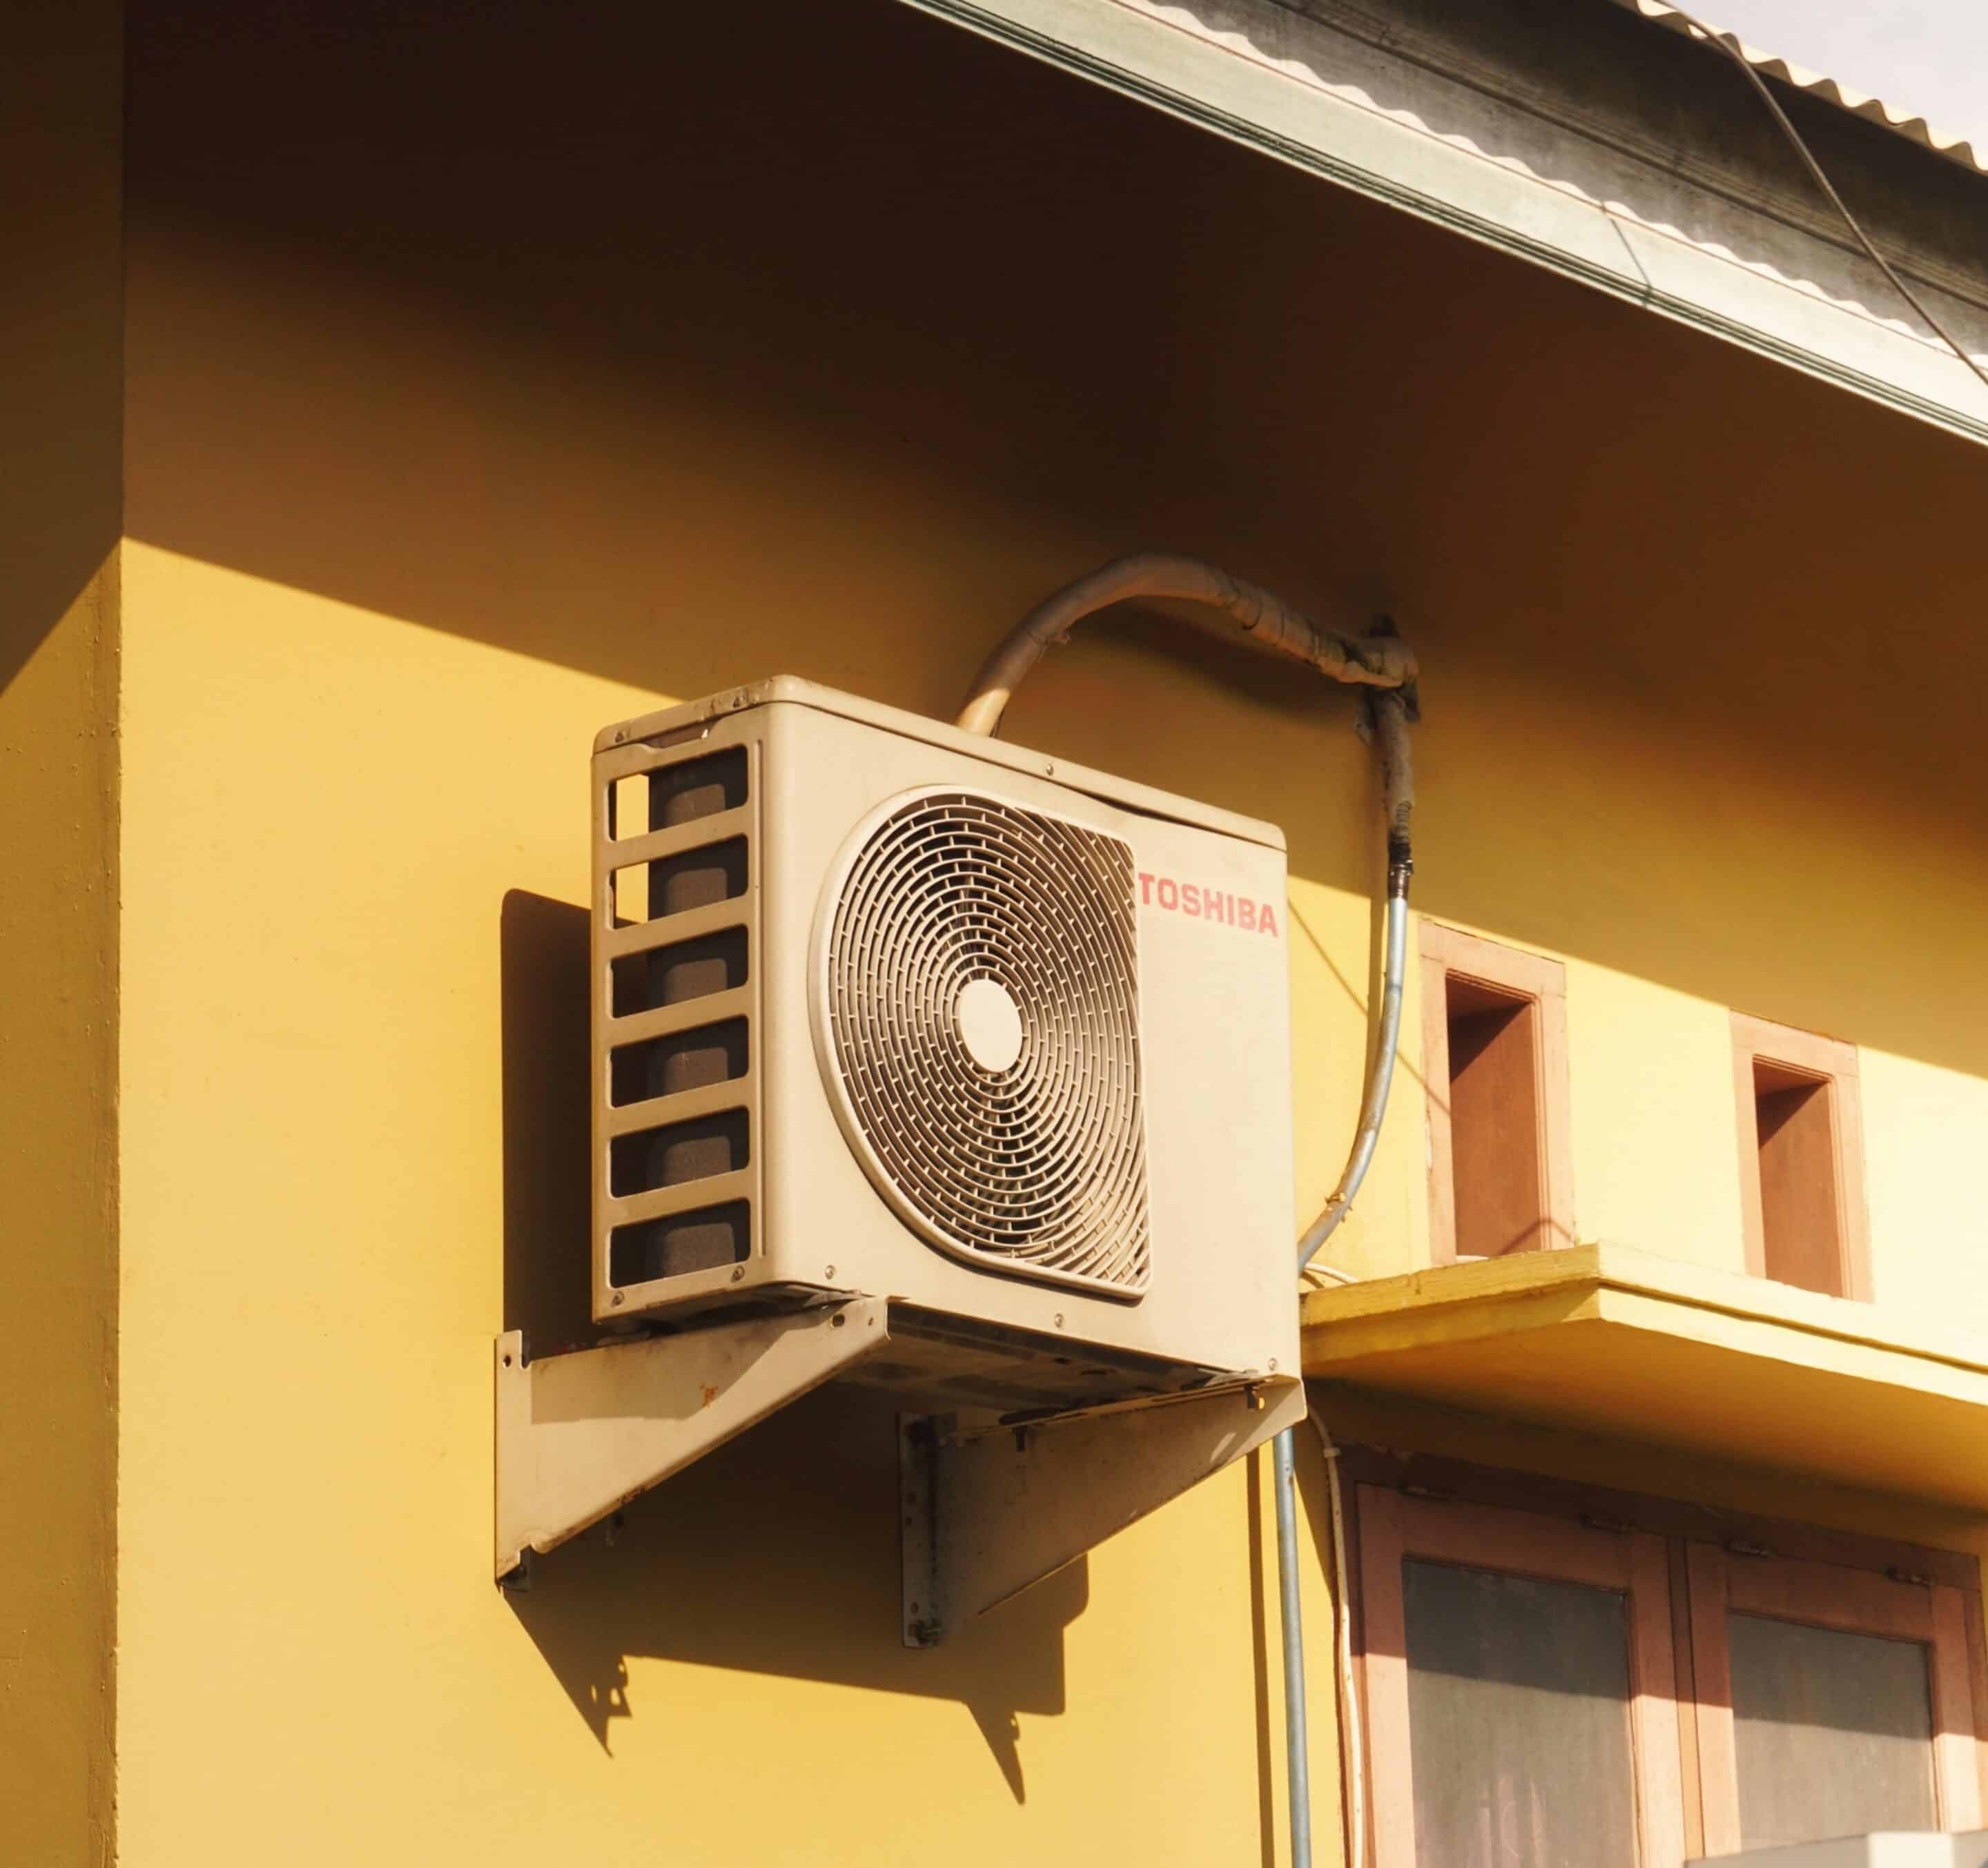 Klimaanlage scaled - 5 Tipps, wie du deine Wohnung im Sommer kühl hältst!